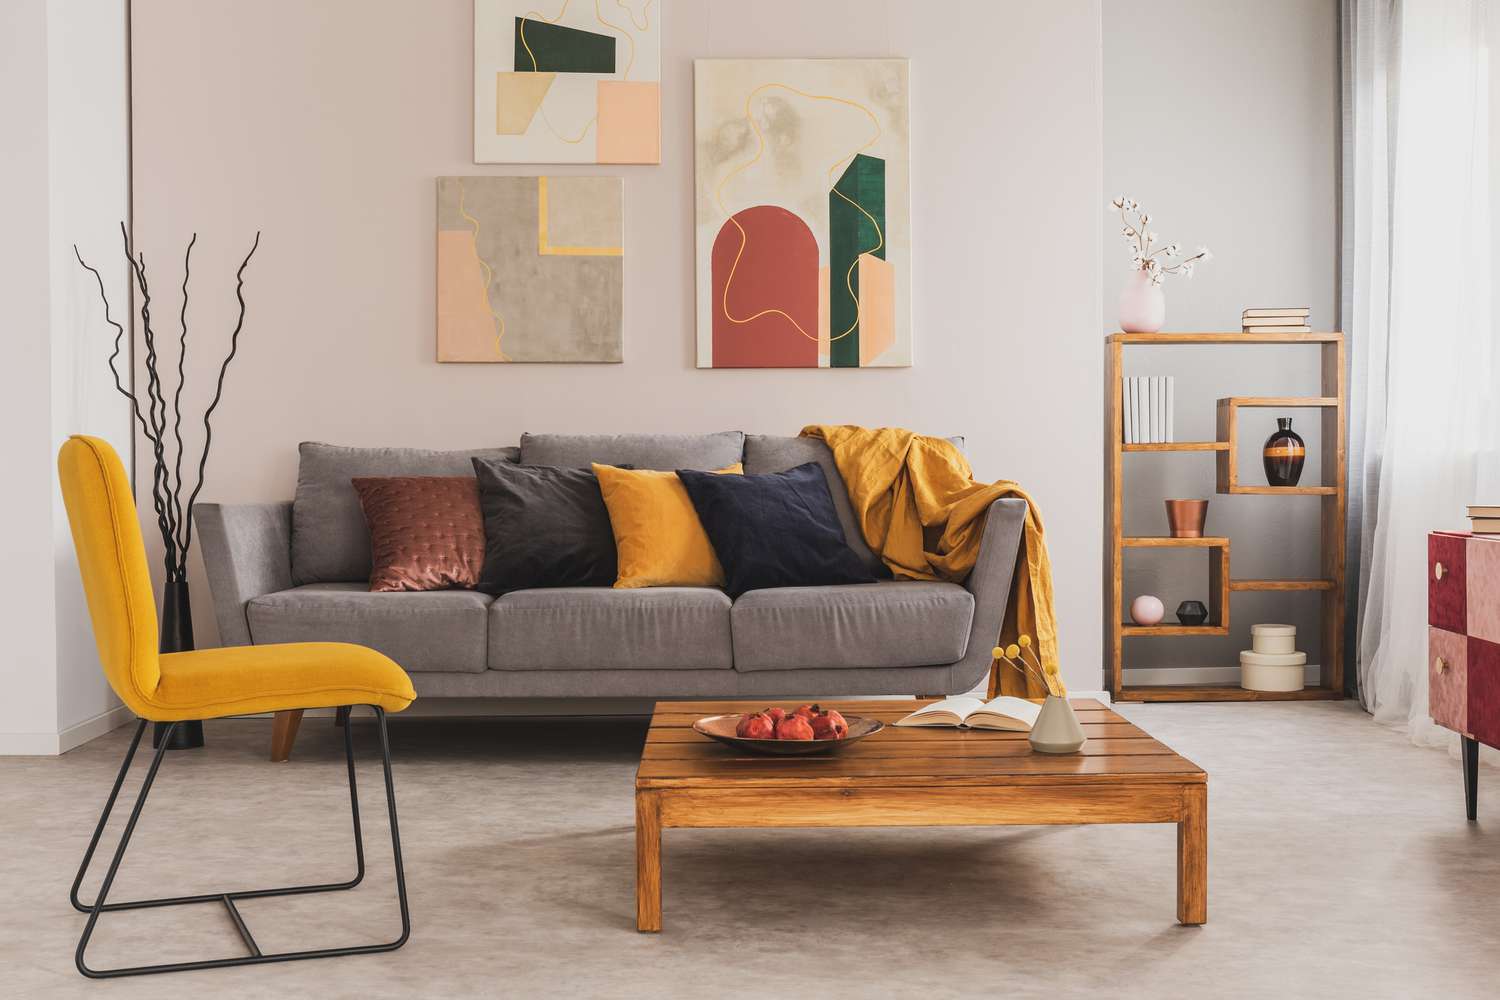 Couchtisch aus Holz und gelber Stuhl vor grauer Couch mit Kissen in trendigem Wohnzimmer